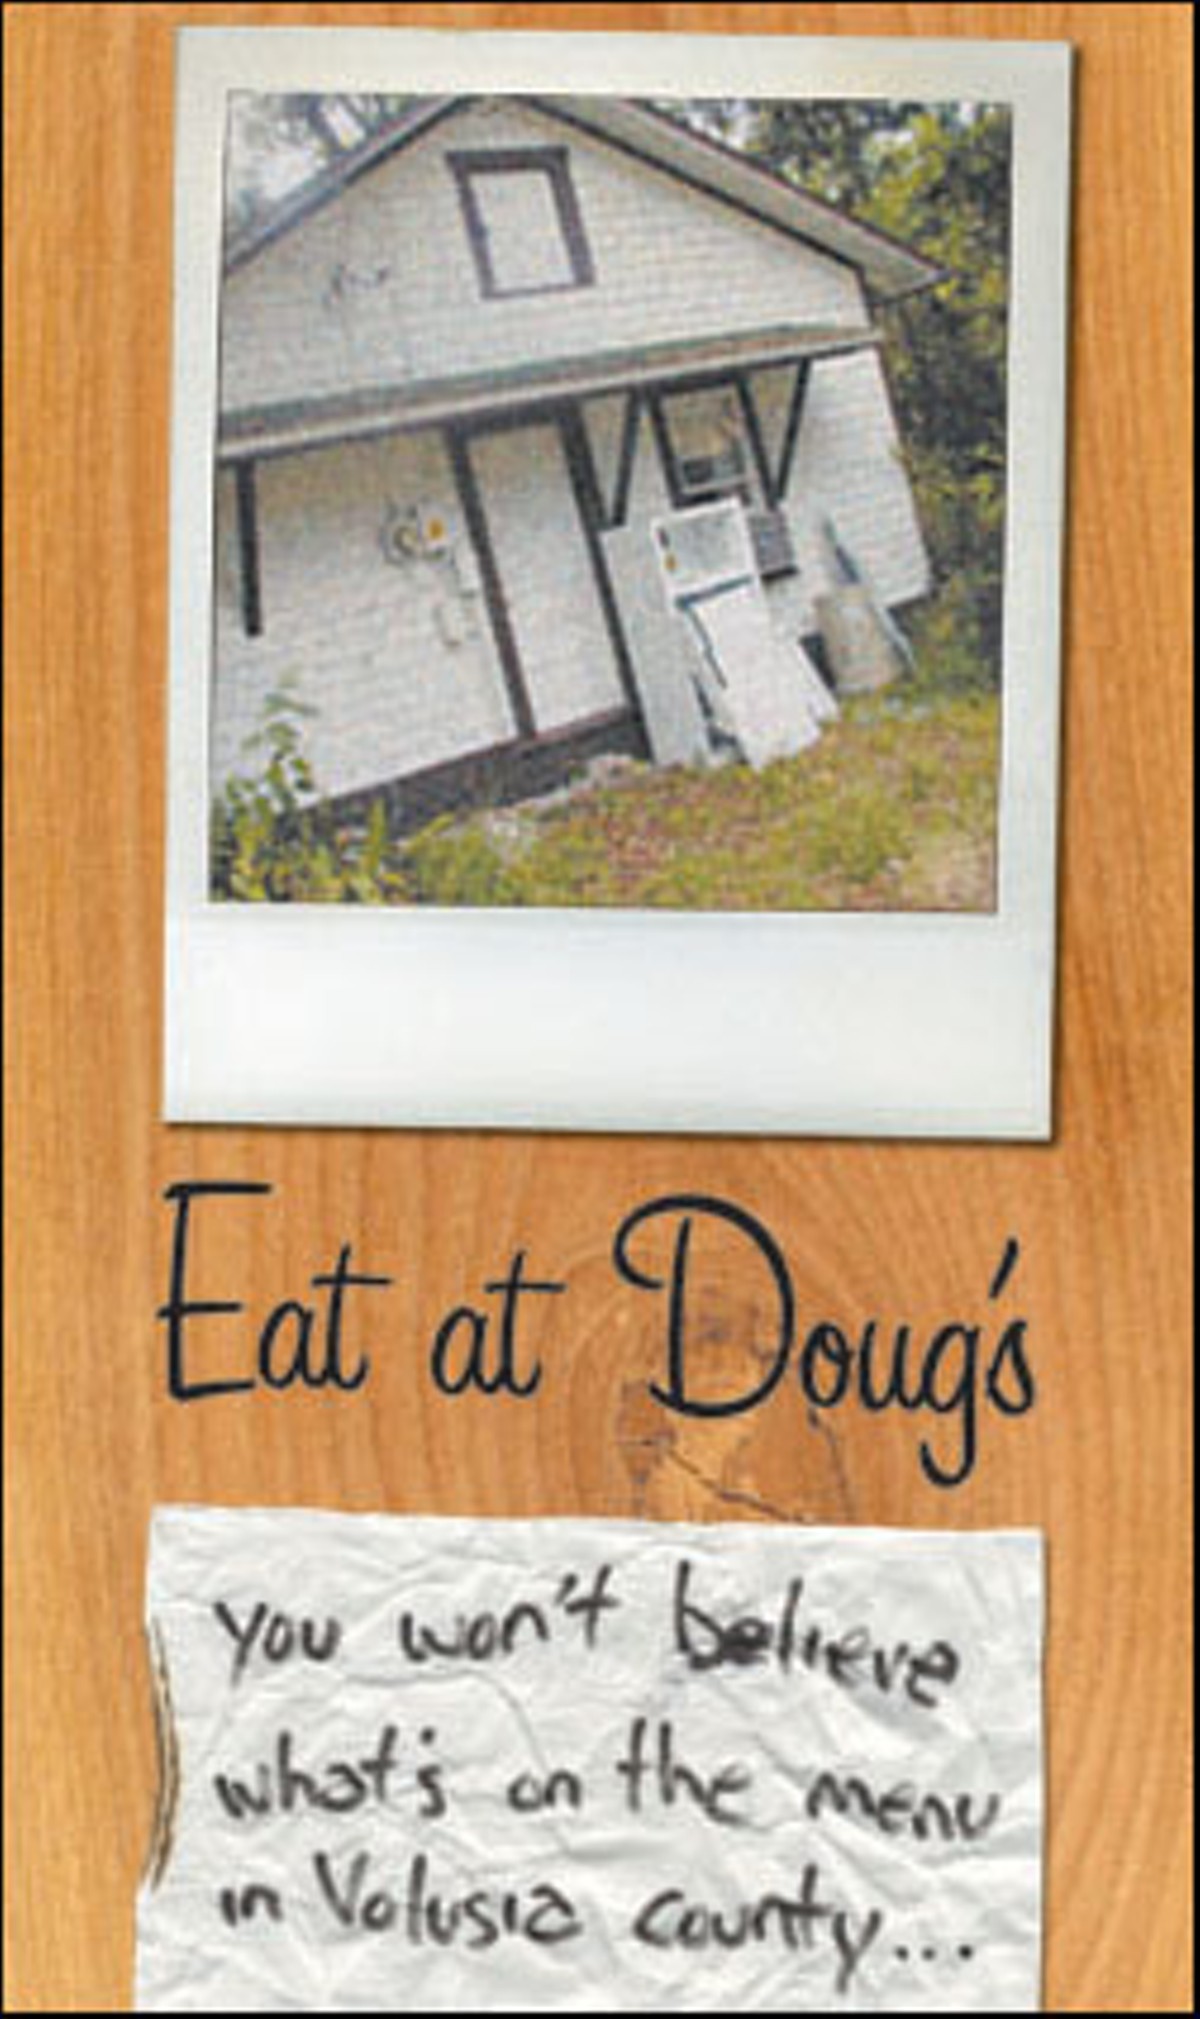 Eat at Doug's